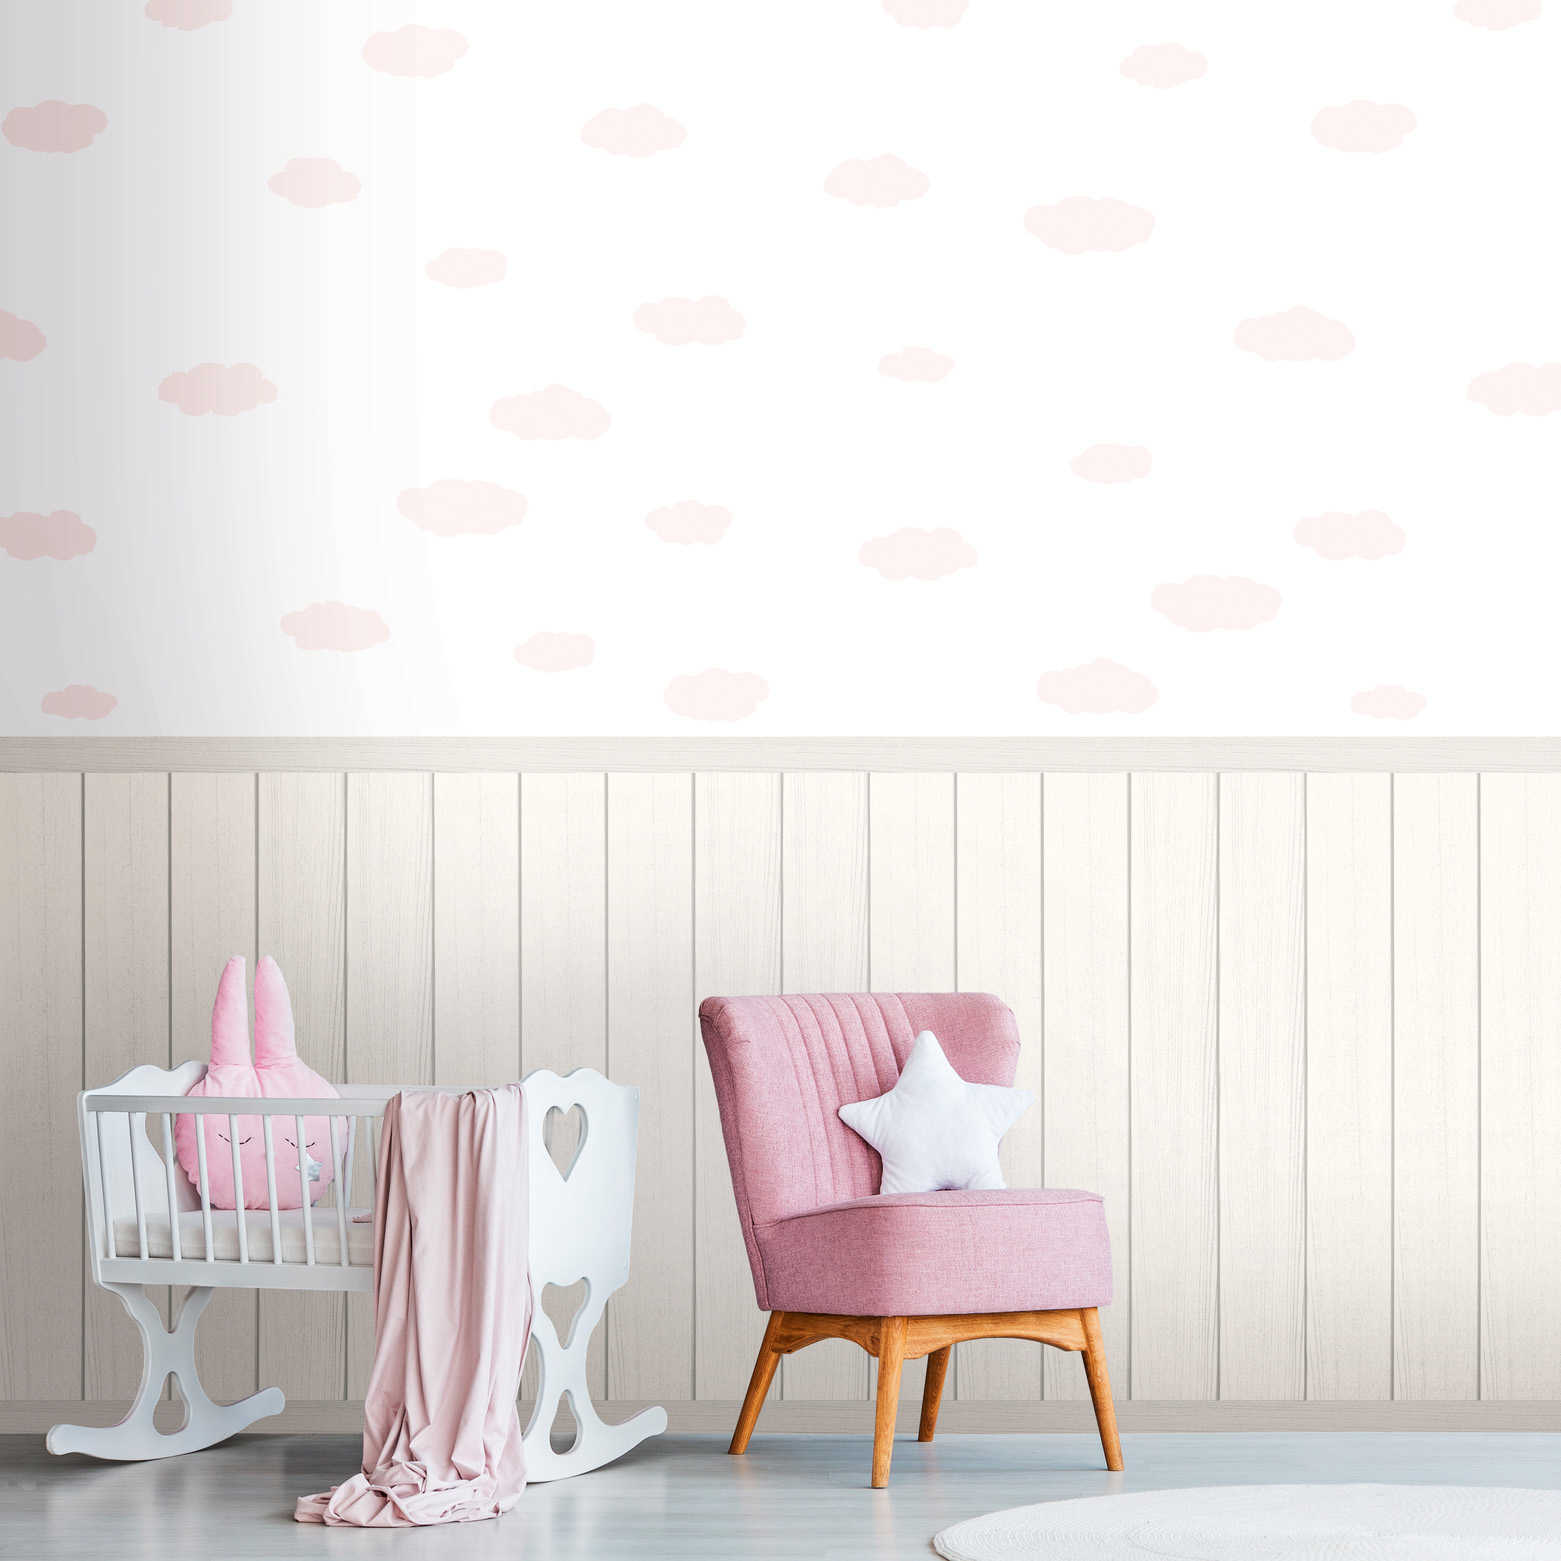 Onderlaag behang met vliesmotief, plintrand met houteffect en wolkenpatroon - wit, roze, grijs
